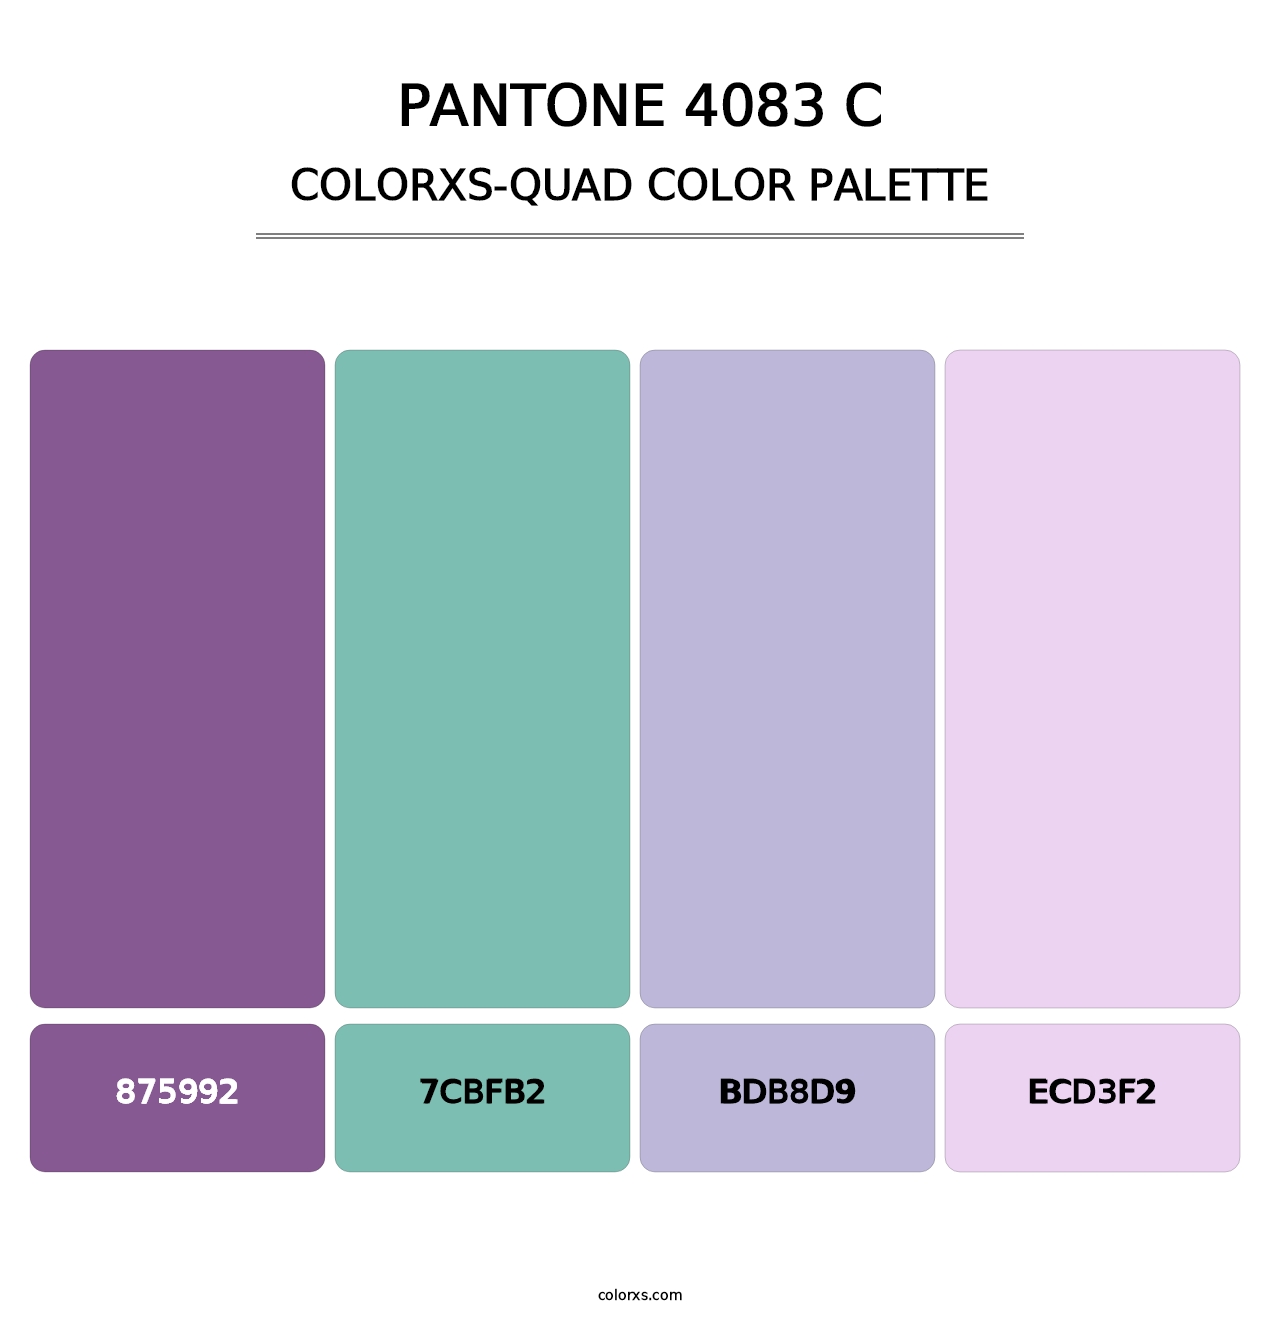 PANTONE 4083 C - Colorxs Quad Palette